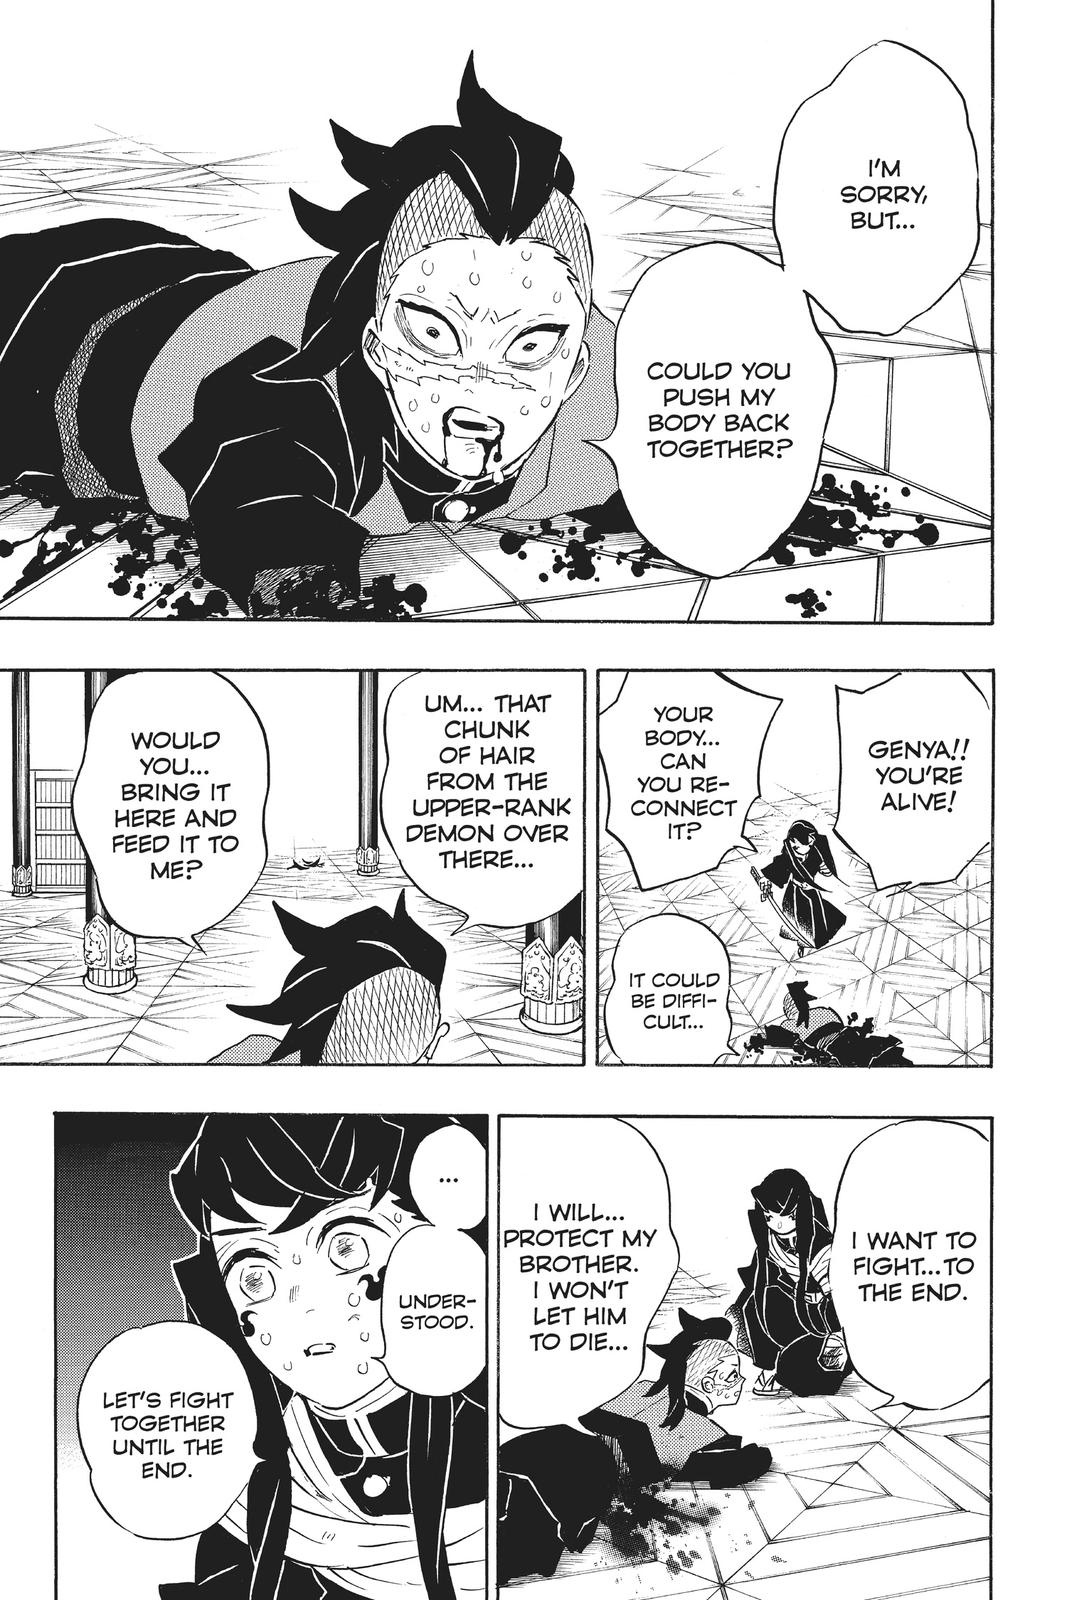 Demon Slayer Manga Manga Chapter - 170 - image 3